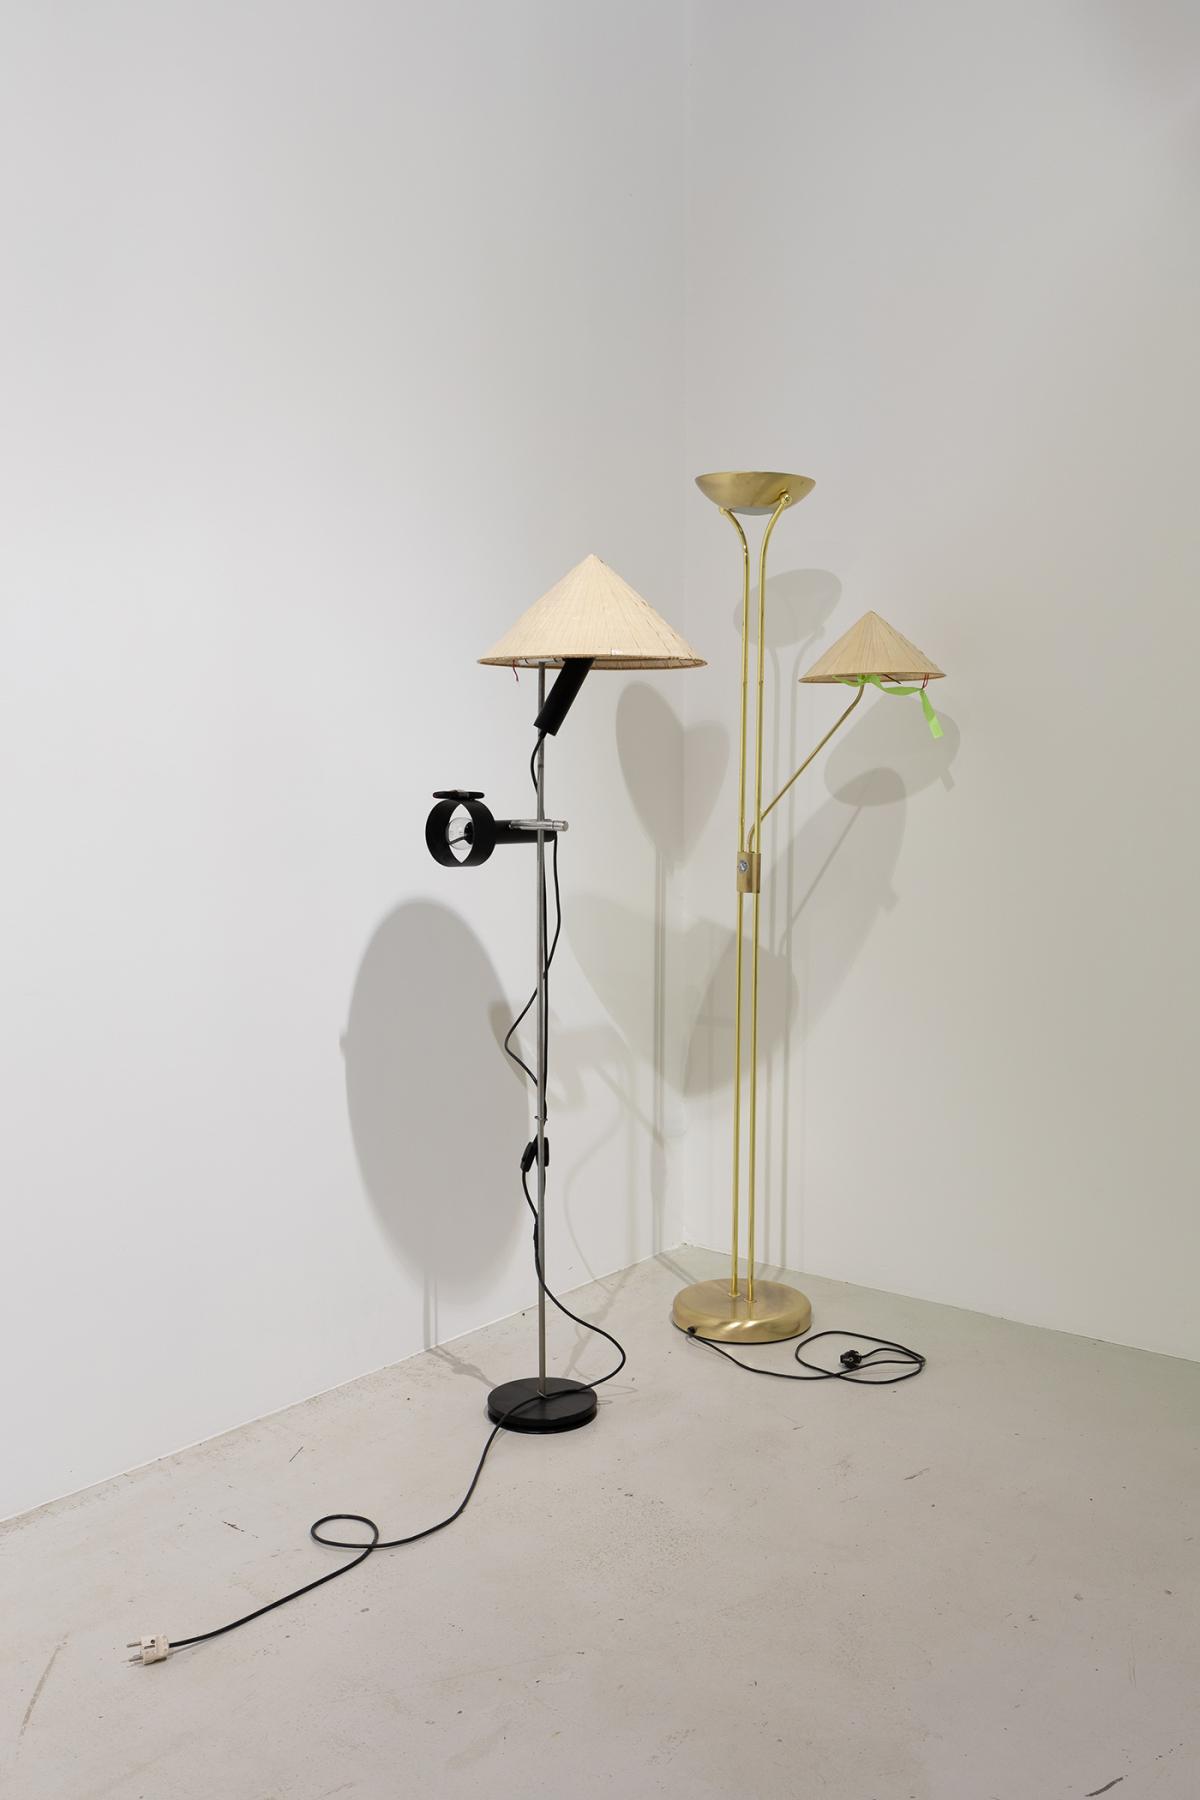 Deux lampadaires installés dans l'angle d'une salle d'exposition